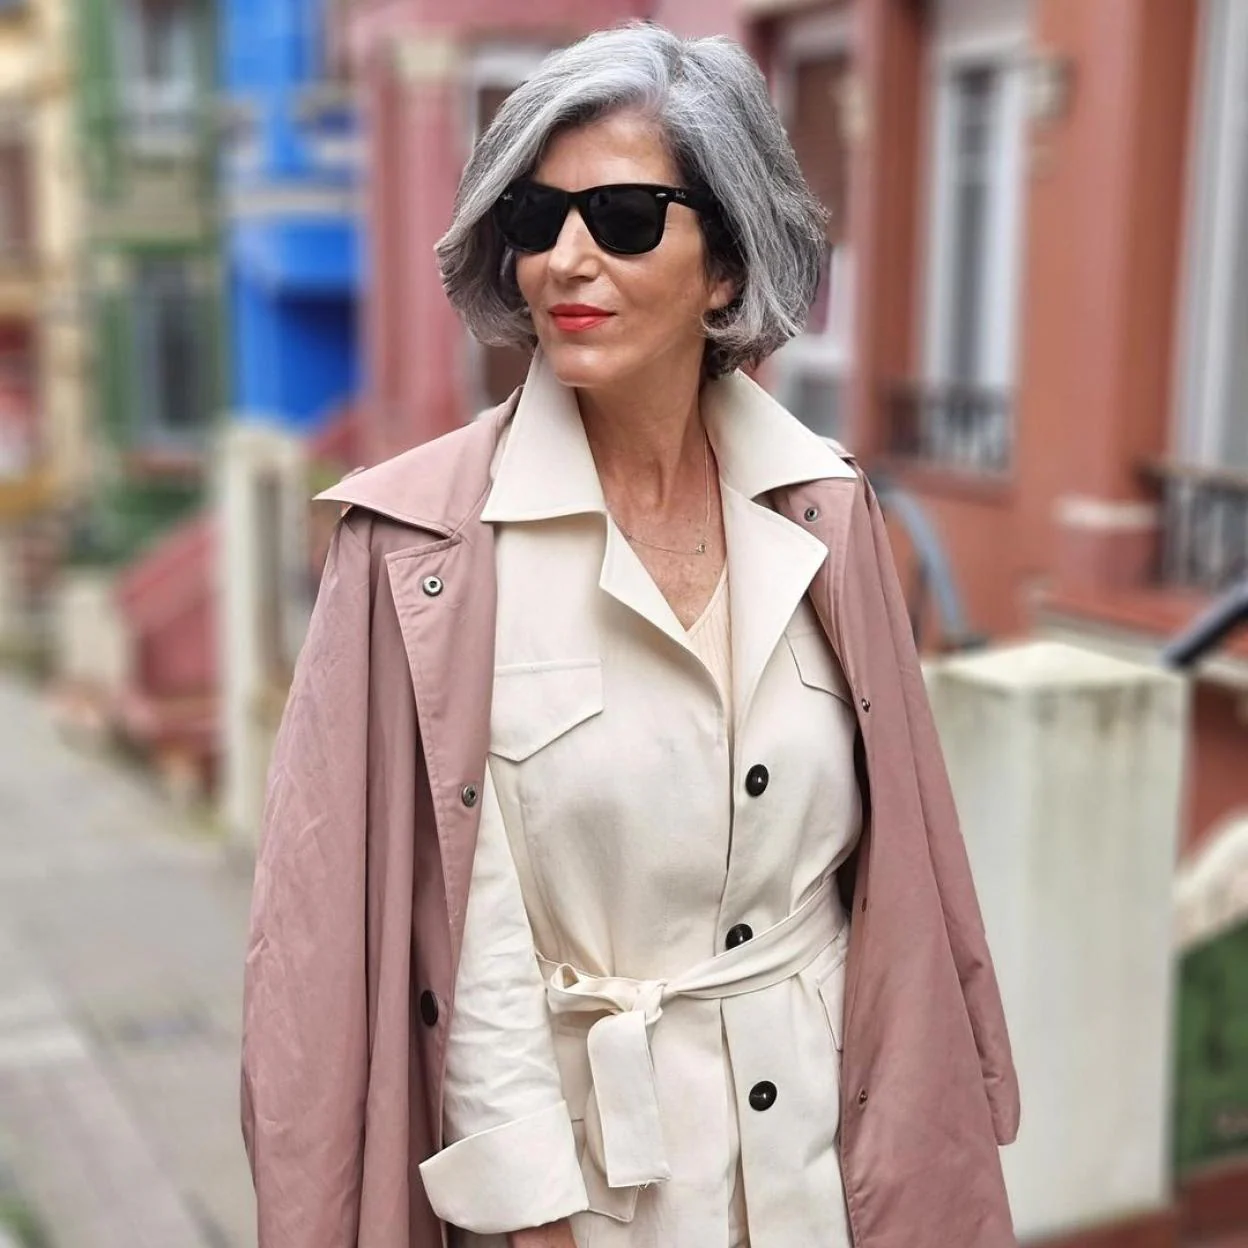 La blazer de El que piden en tienda las de 50 años porque alarga la figura rejuvenece | Mujer Hoy